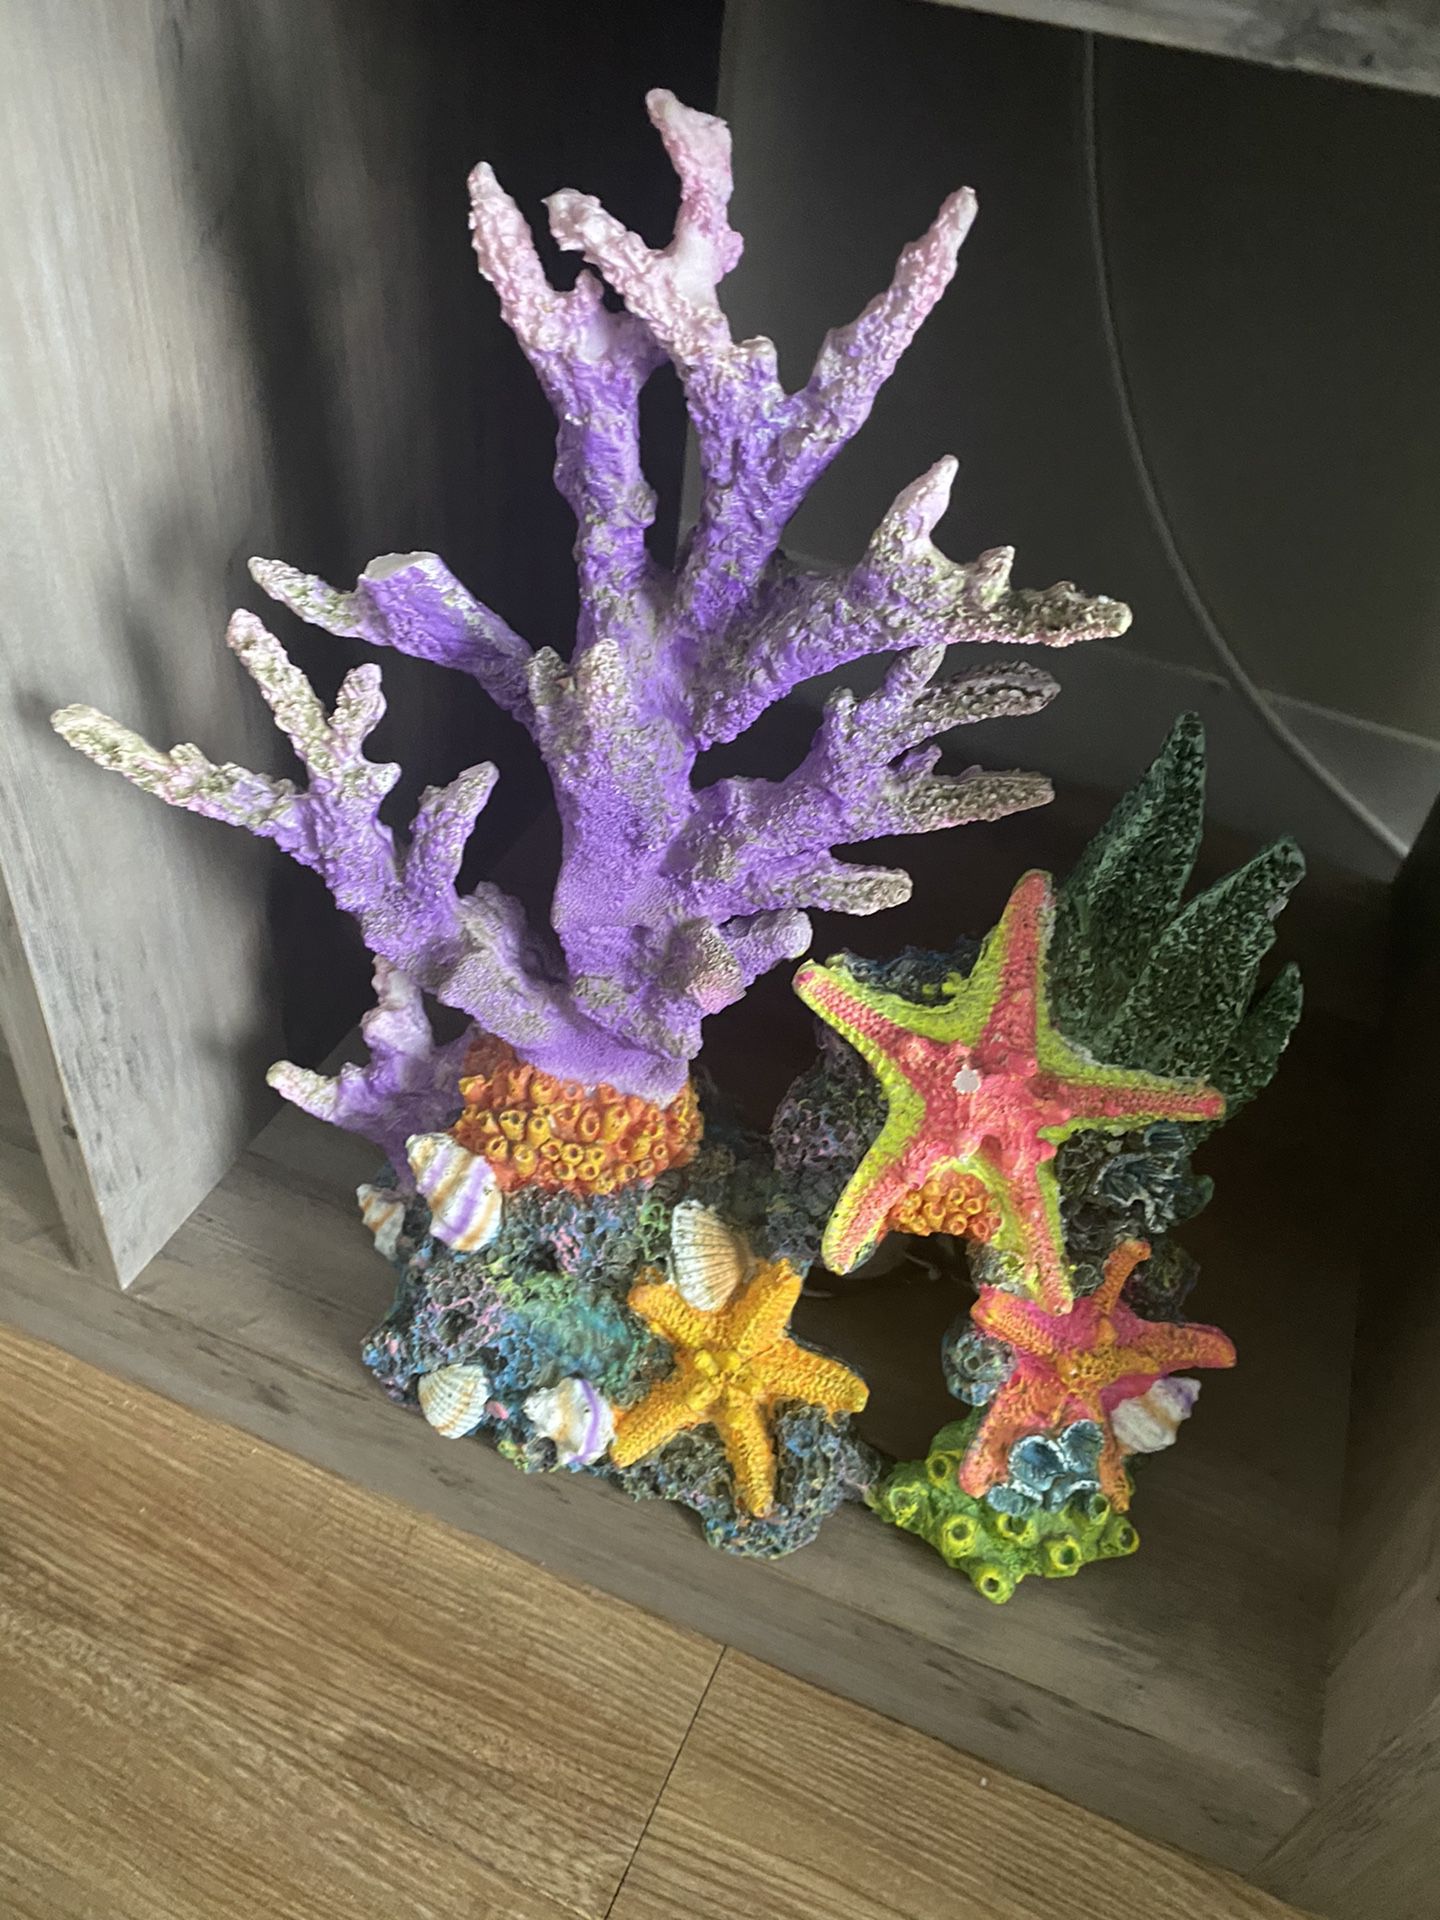 Beautiful mermaid fish tank decorations